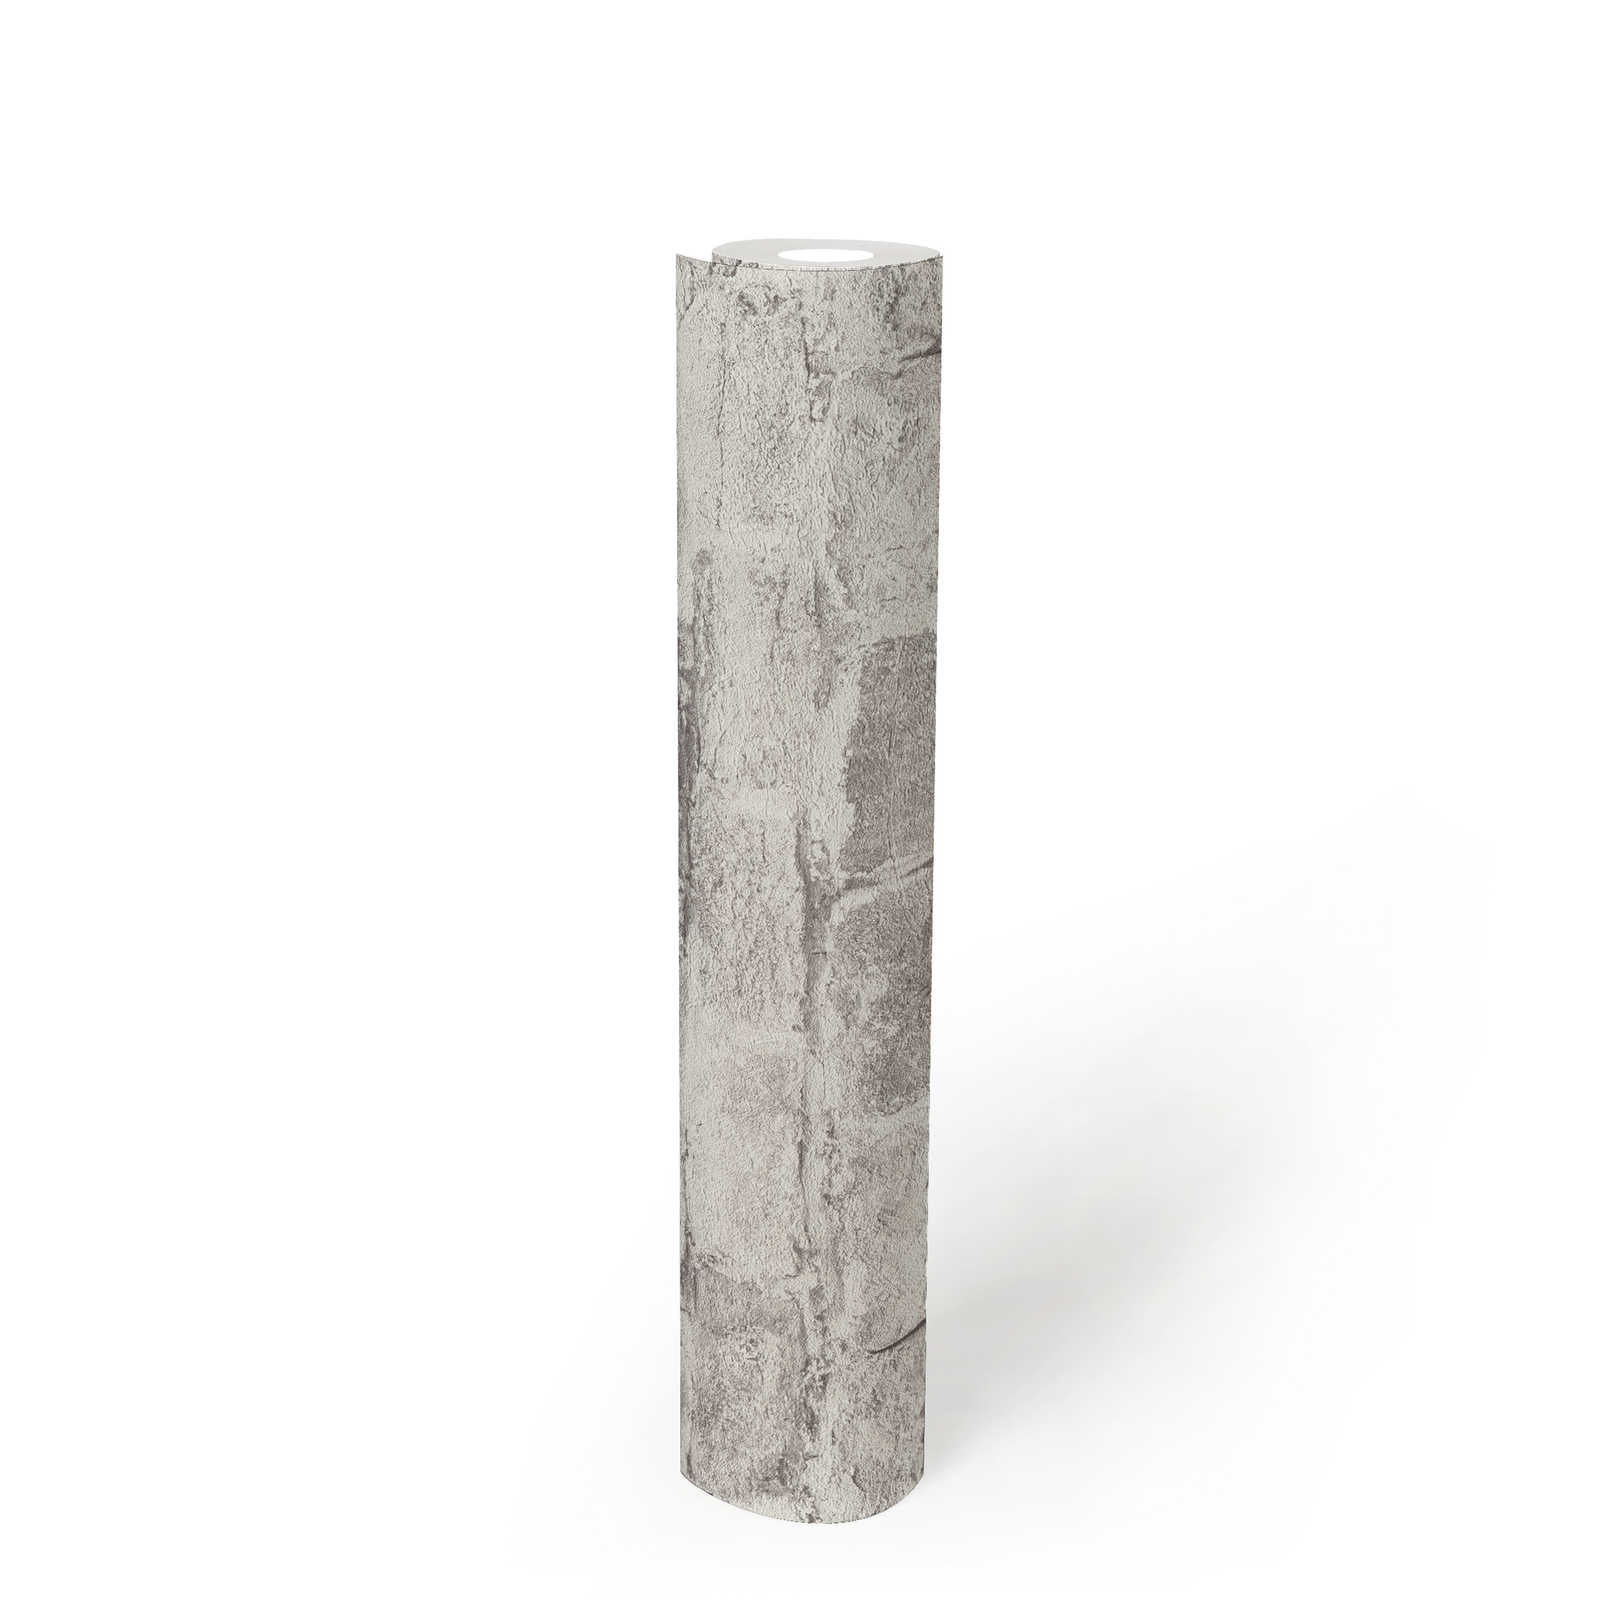             Papel pintado tejido-no tejido con aspecto de piedra - gris, gris, blanco
        